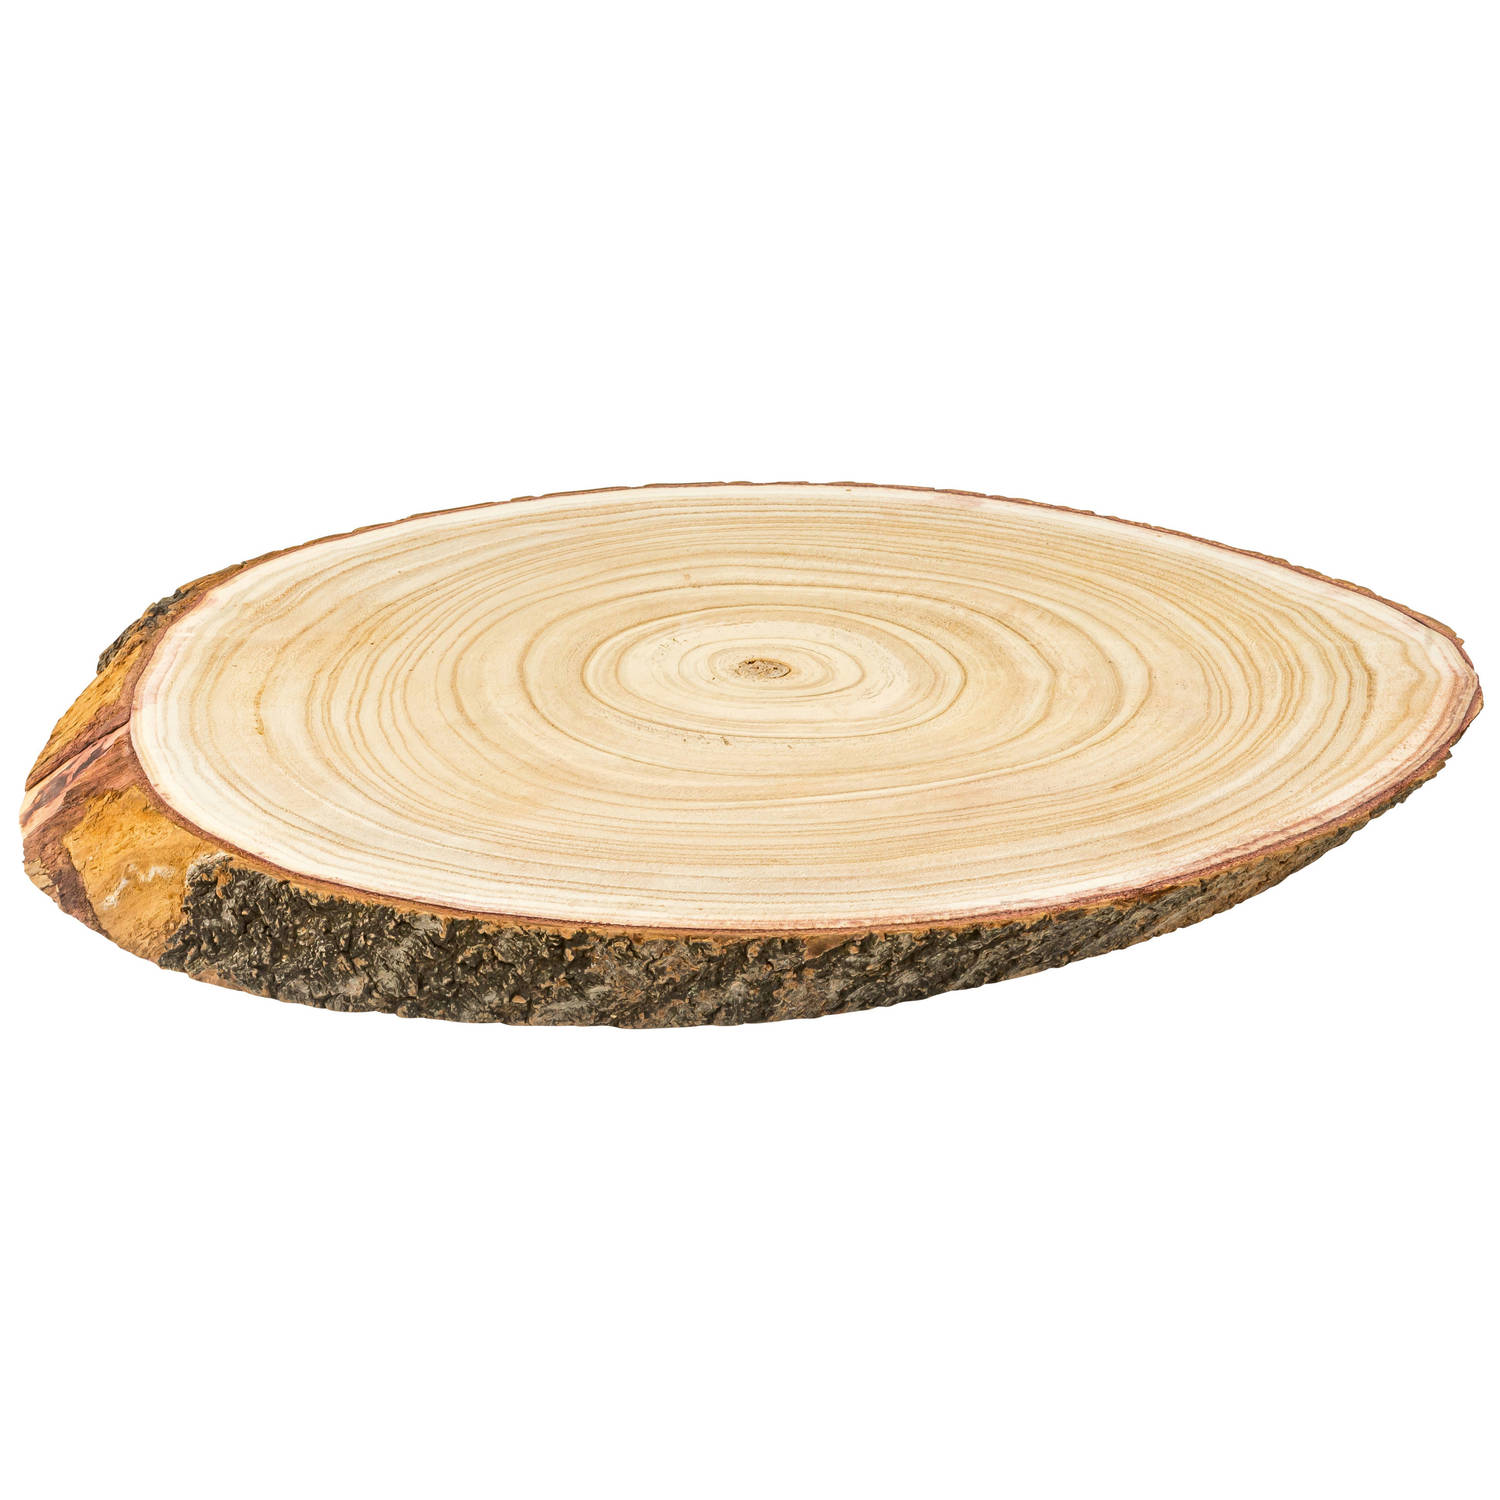 Kaarsenplateau-kaarsenbord boomschijf hout 51 x 32 x 4 cm ovaal Kaarsenplateaus